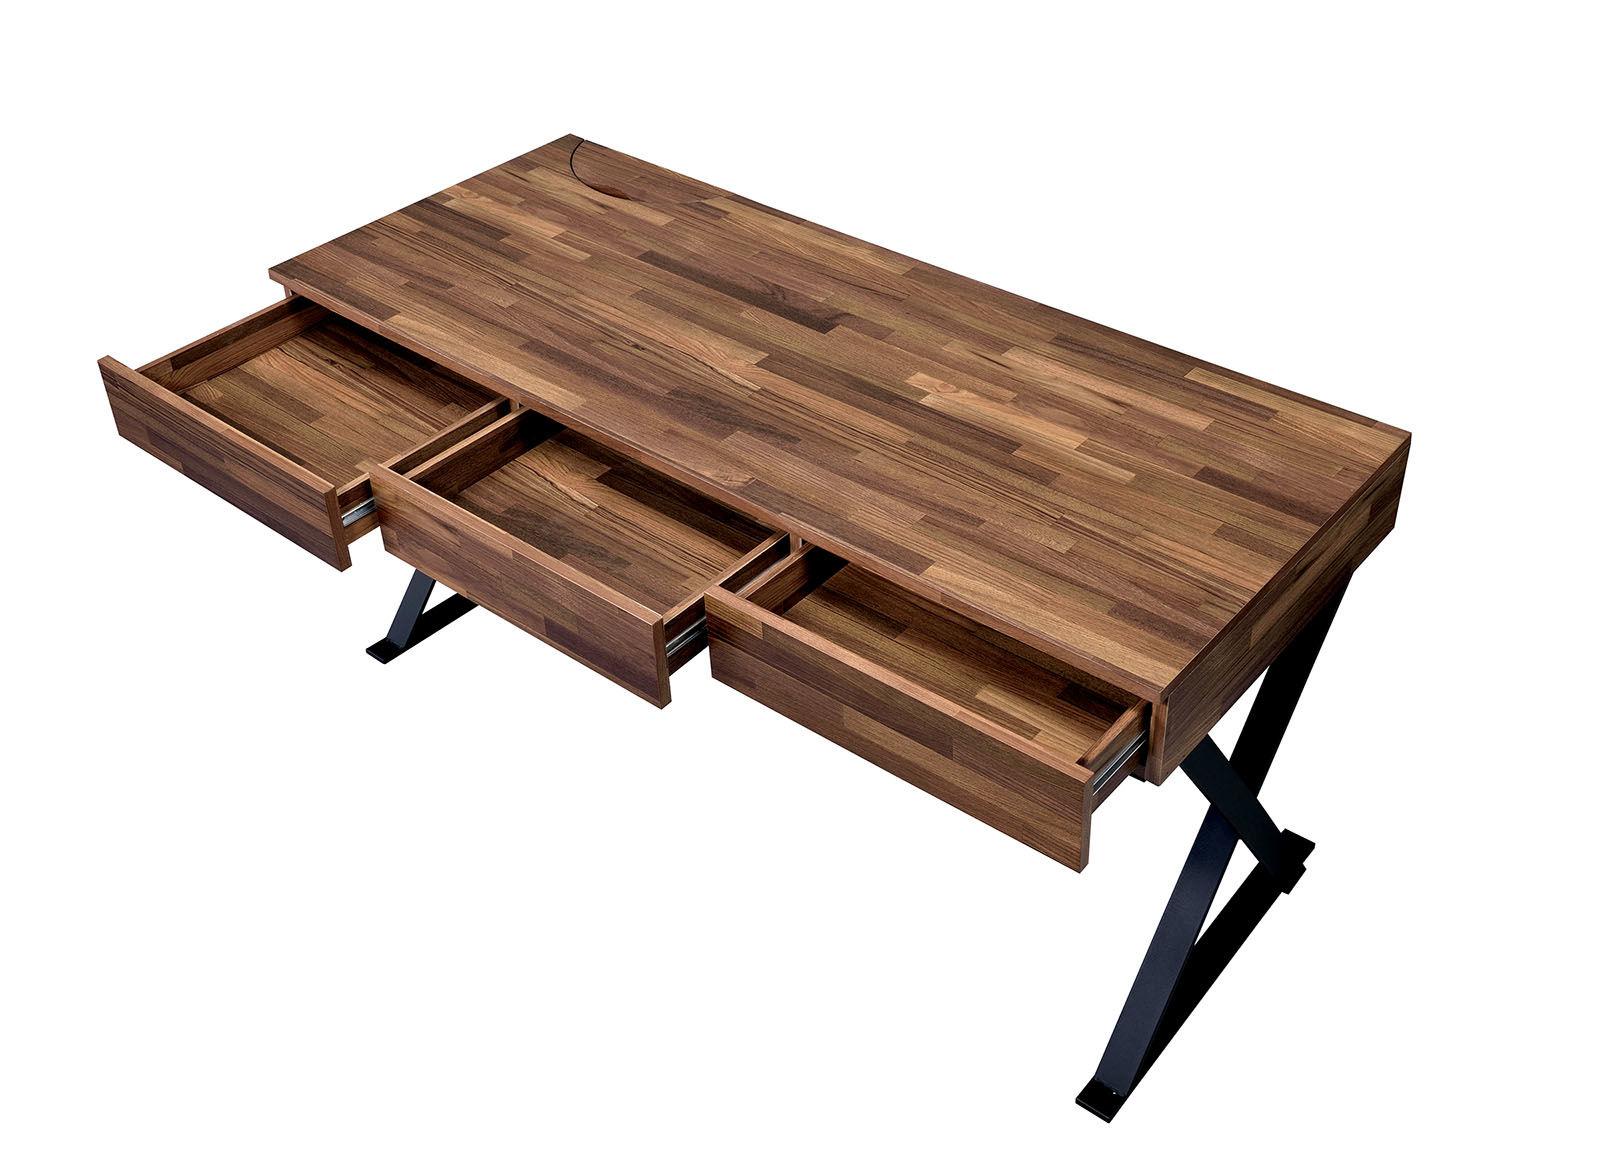 

    
Industrial Black Wood Desk Furniture of America CM-DK807 Tensed
